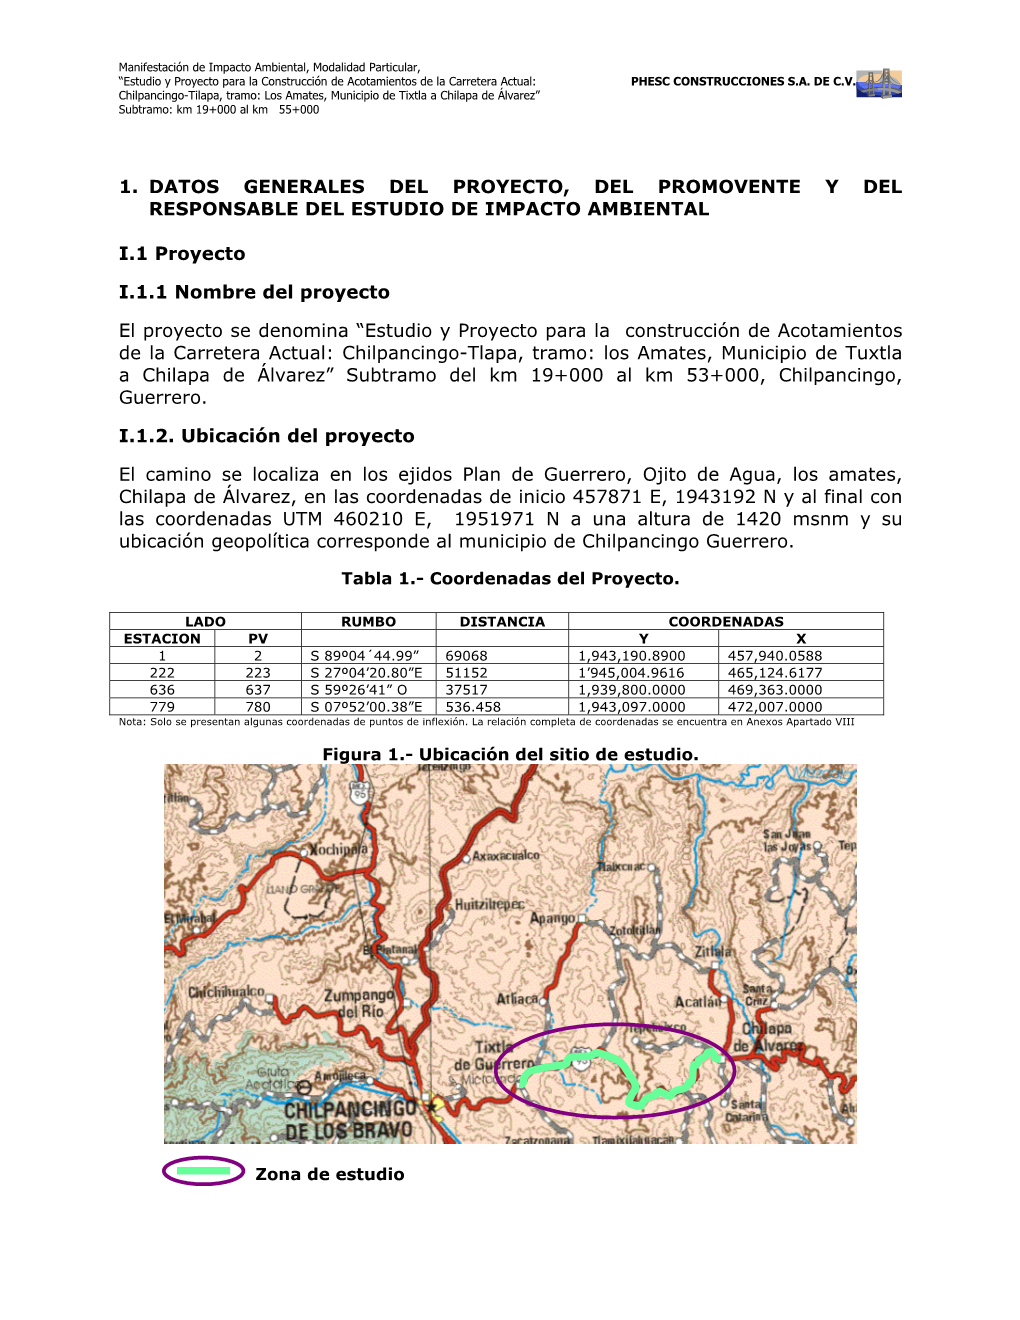 Estudio Y Proyecto Para La Construcción De Acotamientos De La Carretera Actual: Chilpancingo-Tlapa, Tramo: Los Amates, Mu